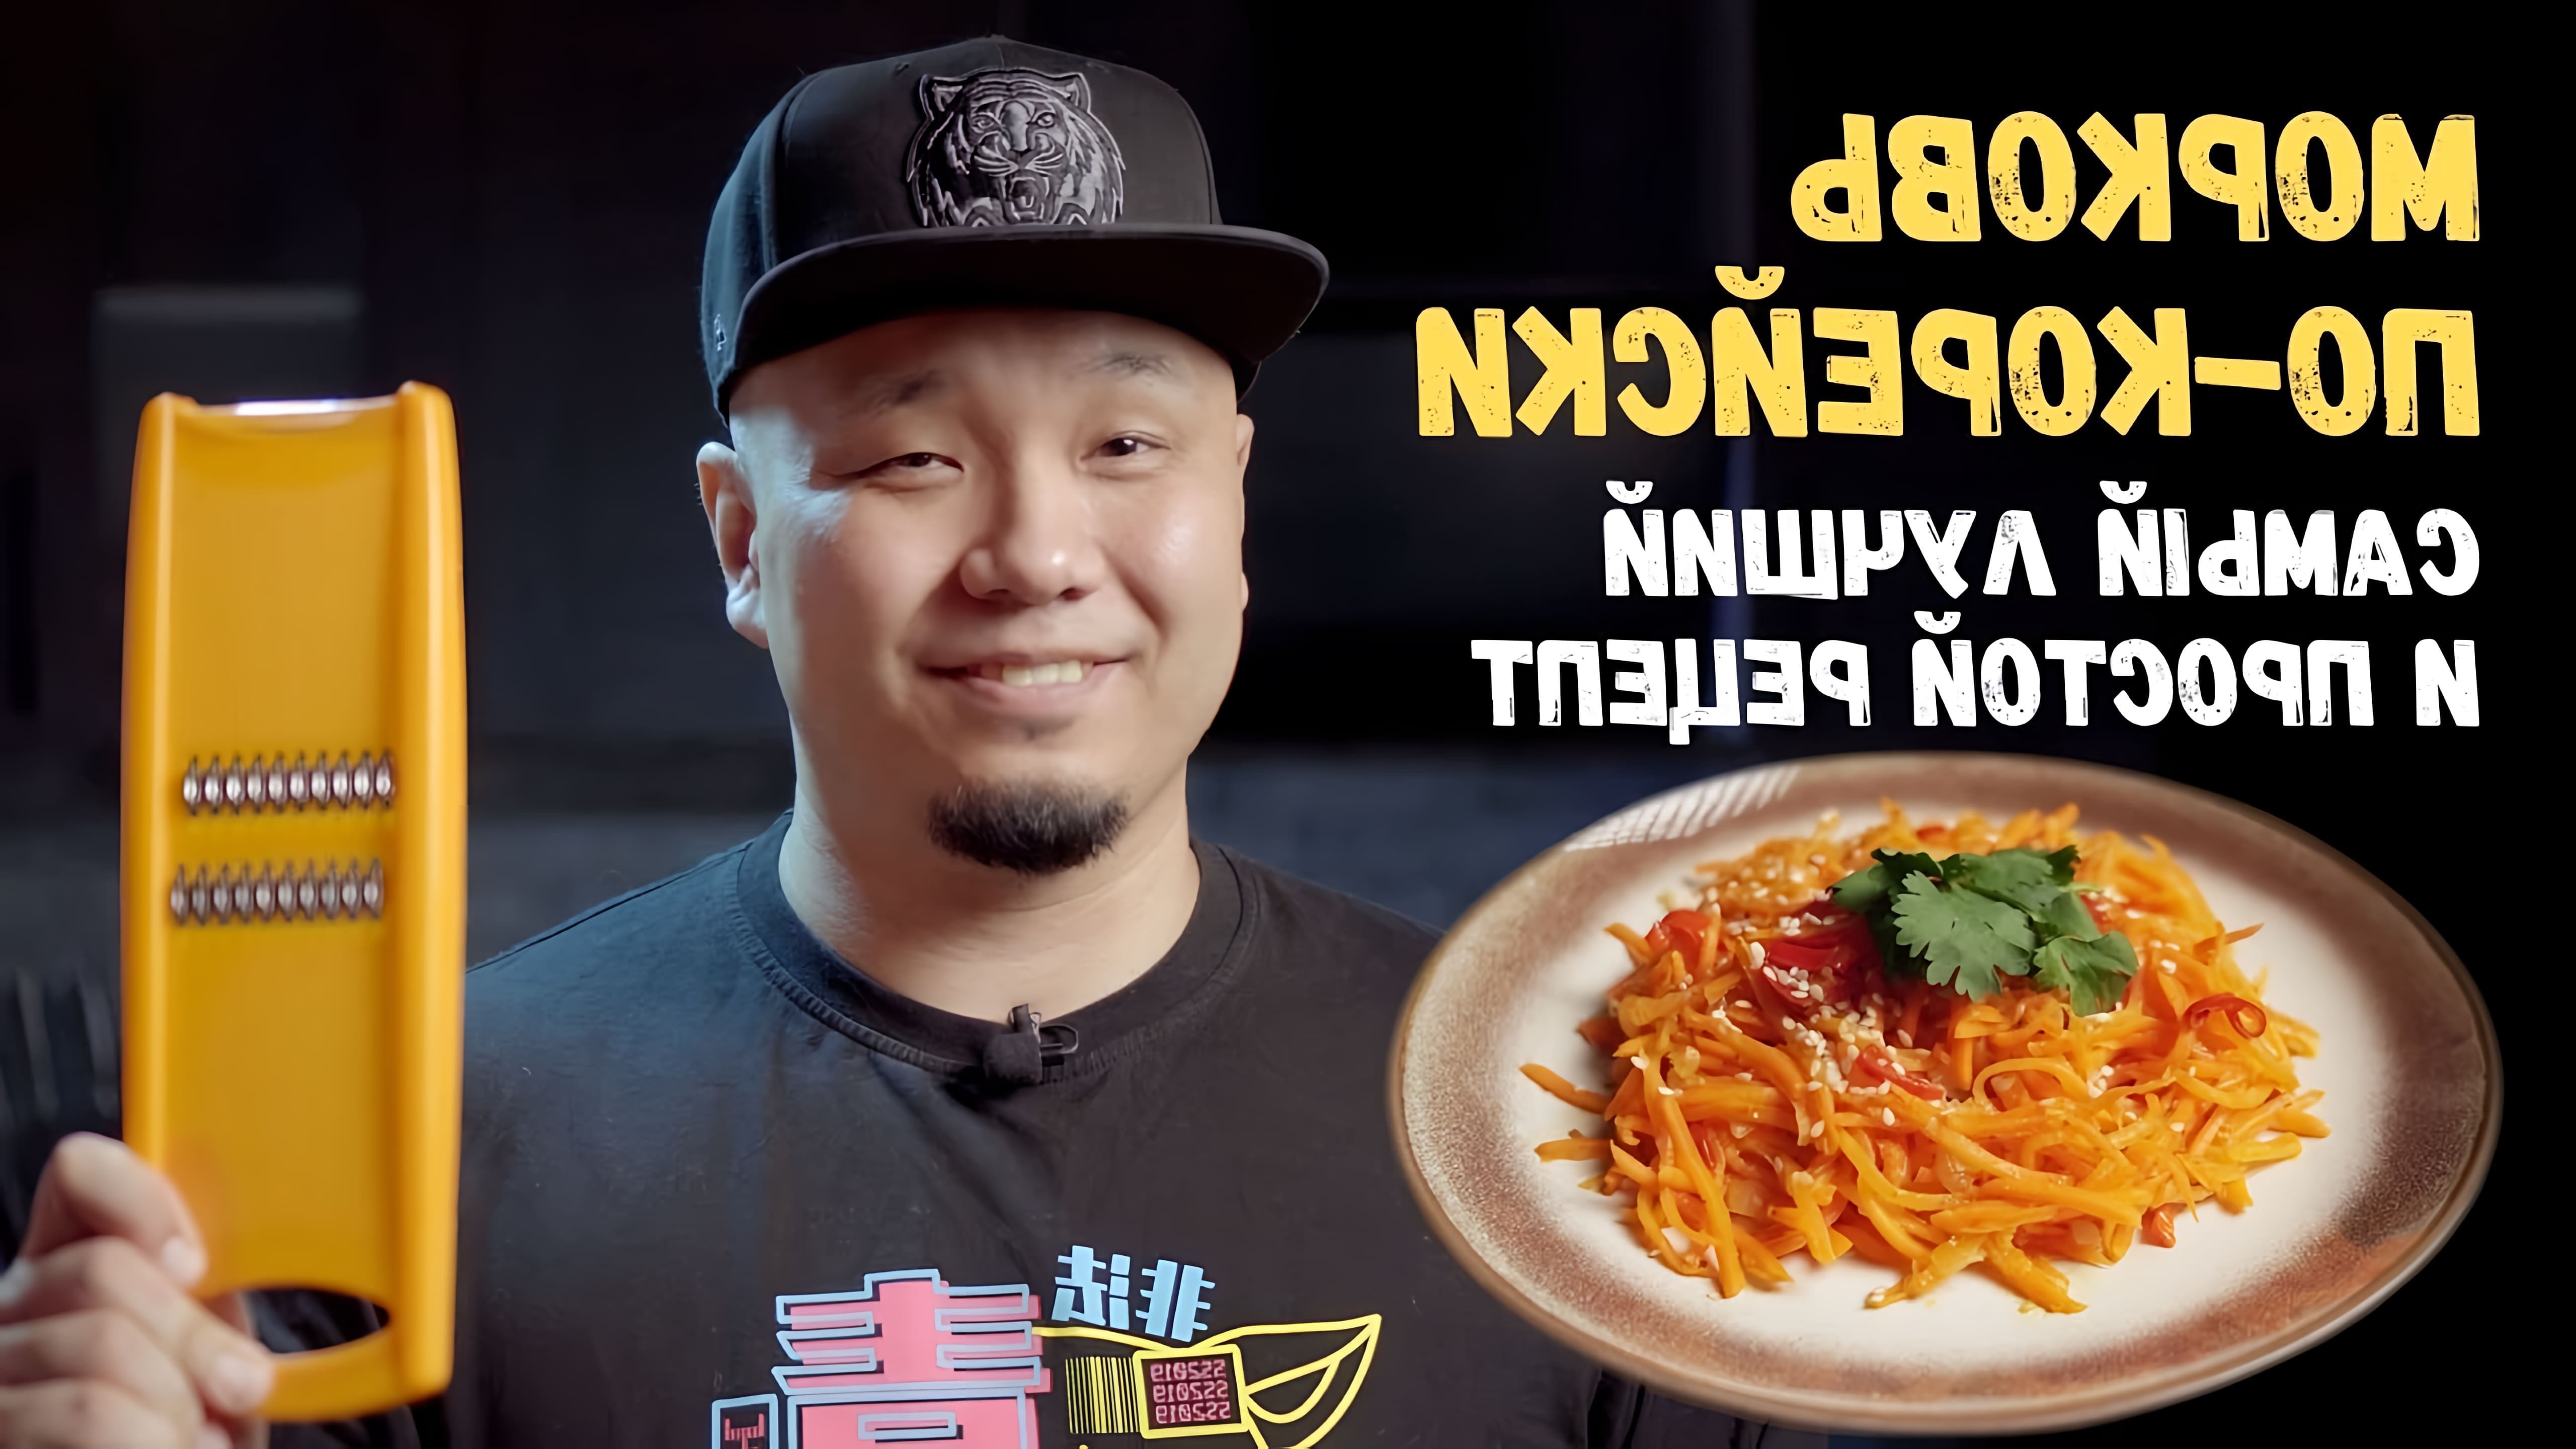 В этом видео демонстрируется рецепт приготовления моркови по-корейски, также известной как морковча